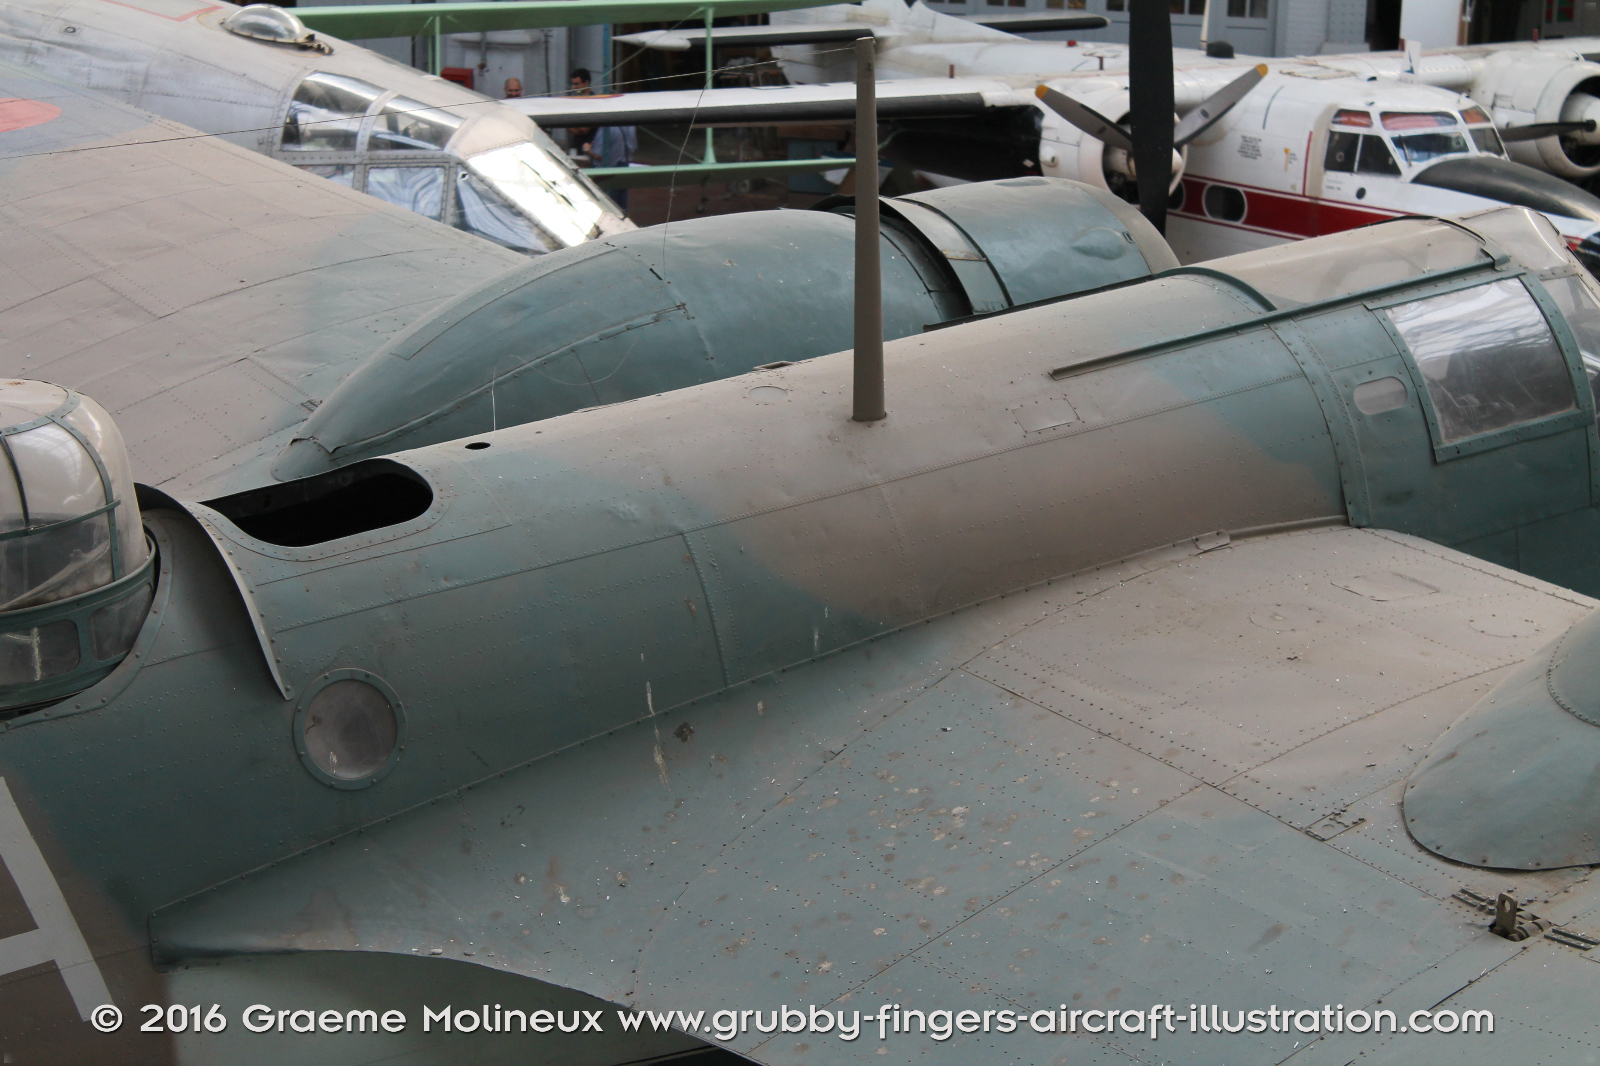 Bristol_Blenheim_MkIV_Walkaround_10083_RAF_Belgium_Museum_2015_11_GraemeMolineux